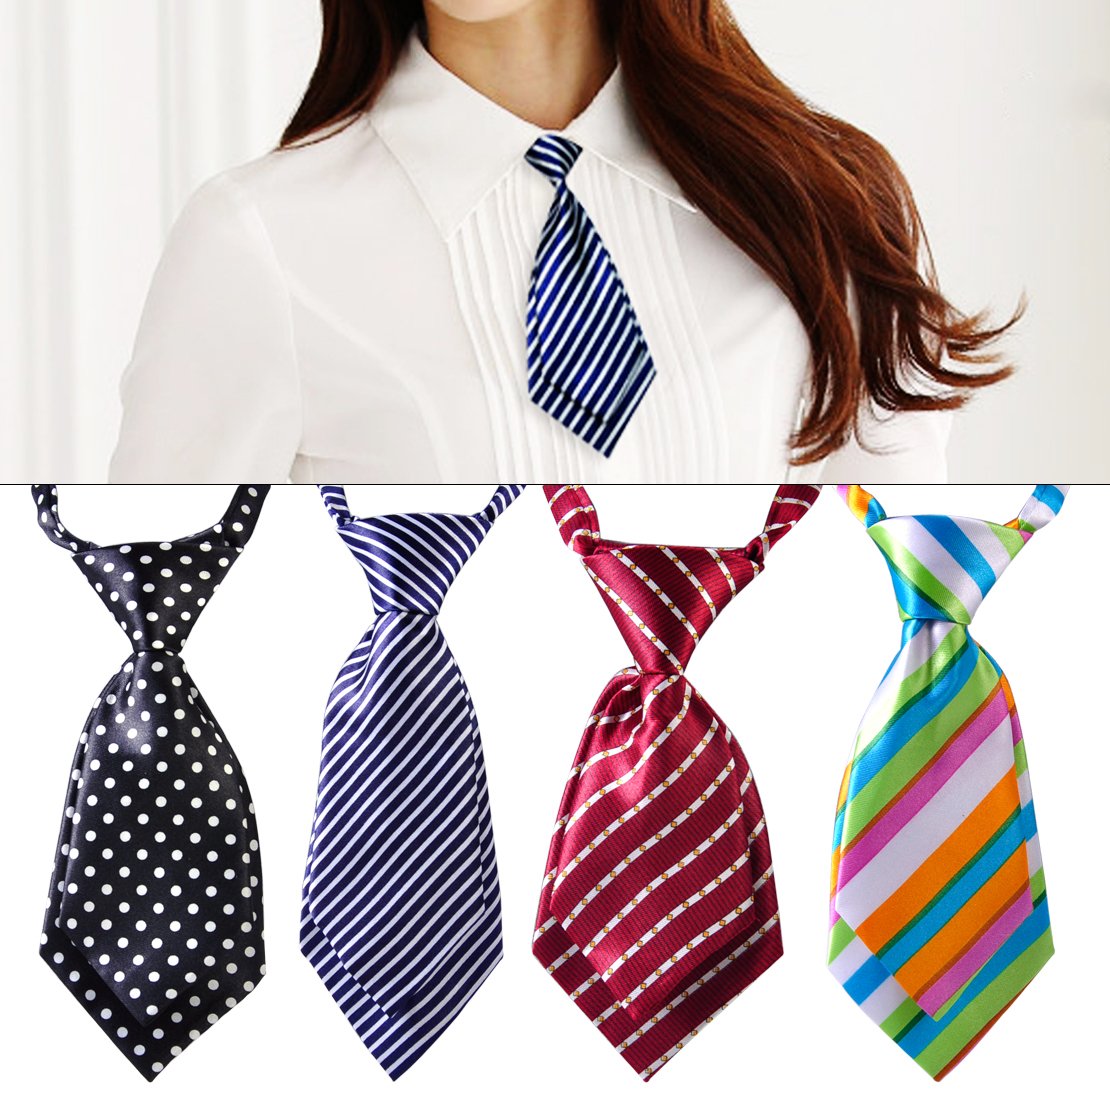 Галстук перевод. Женский галстук. Женщина в галстуке. Короткий галстук. Форменный галстук для женщин.